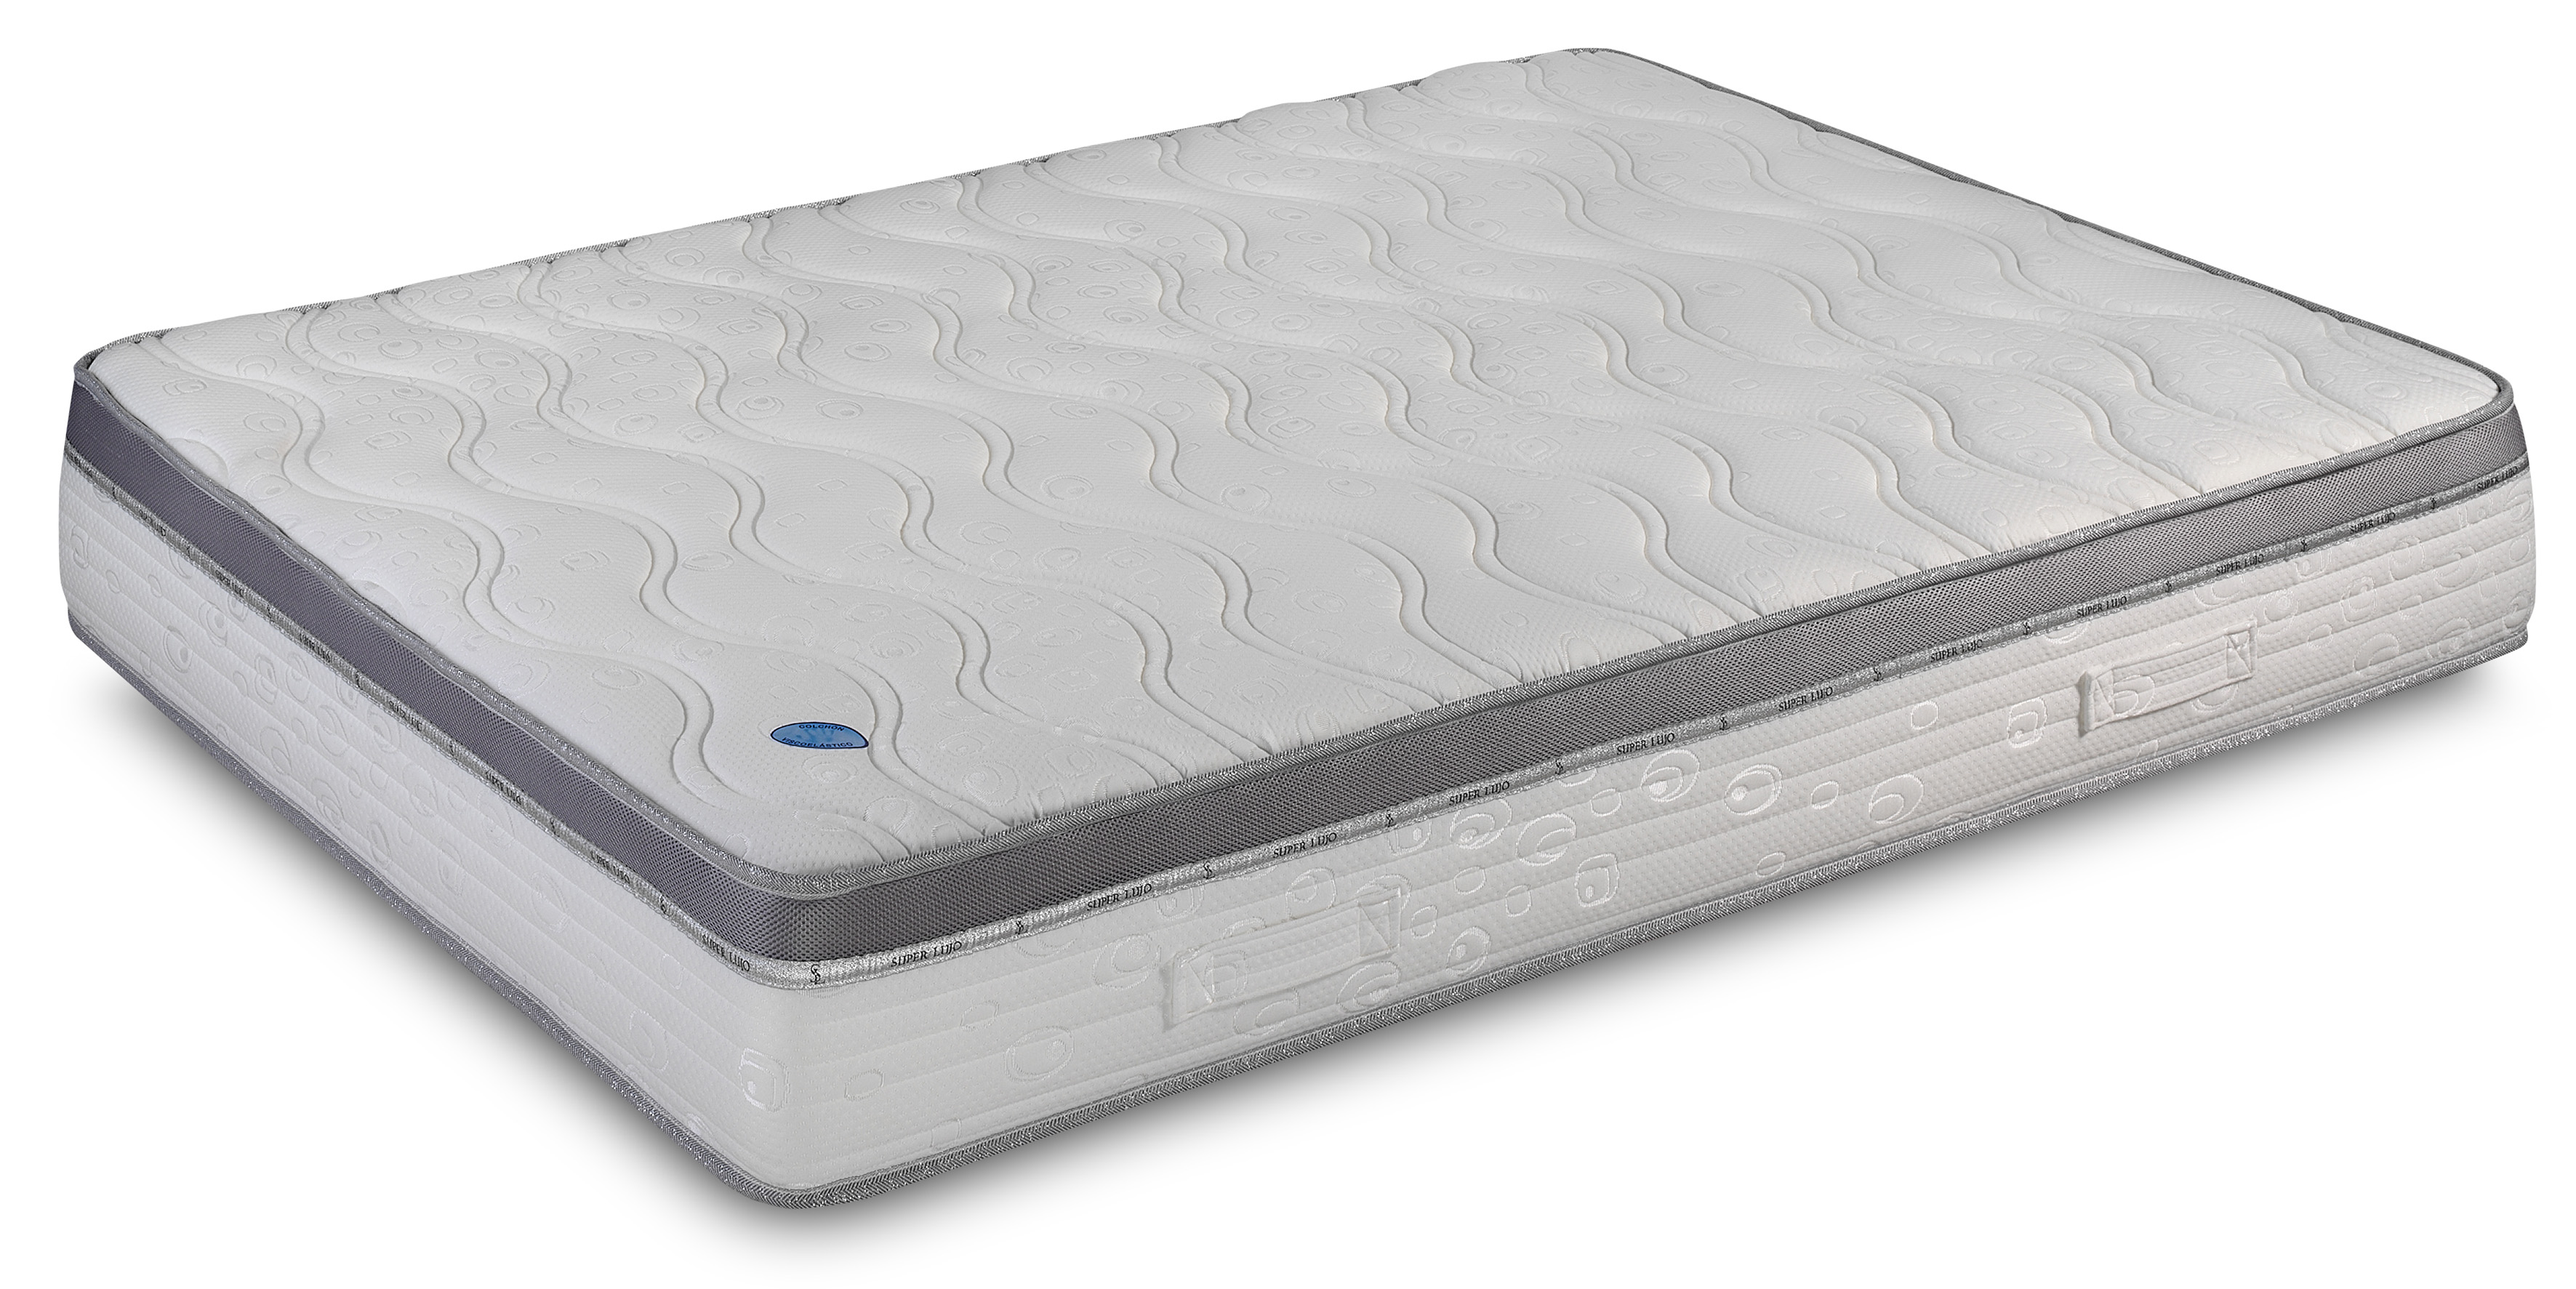 1.5 inch visco elastic mattress topper